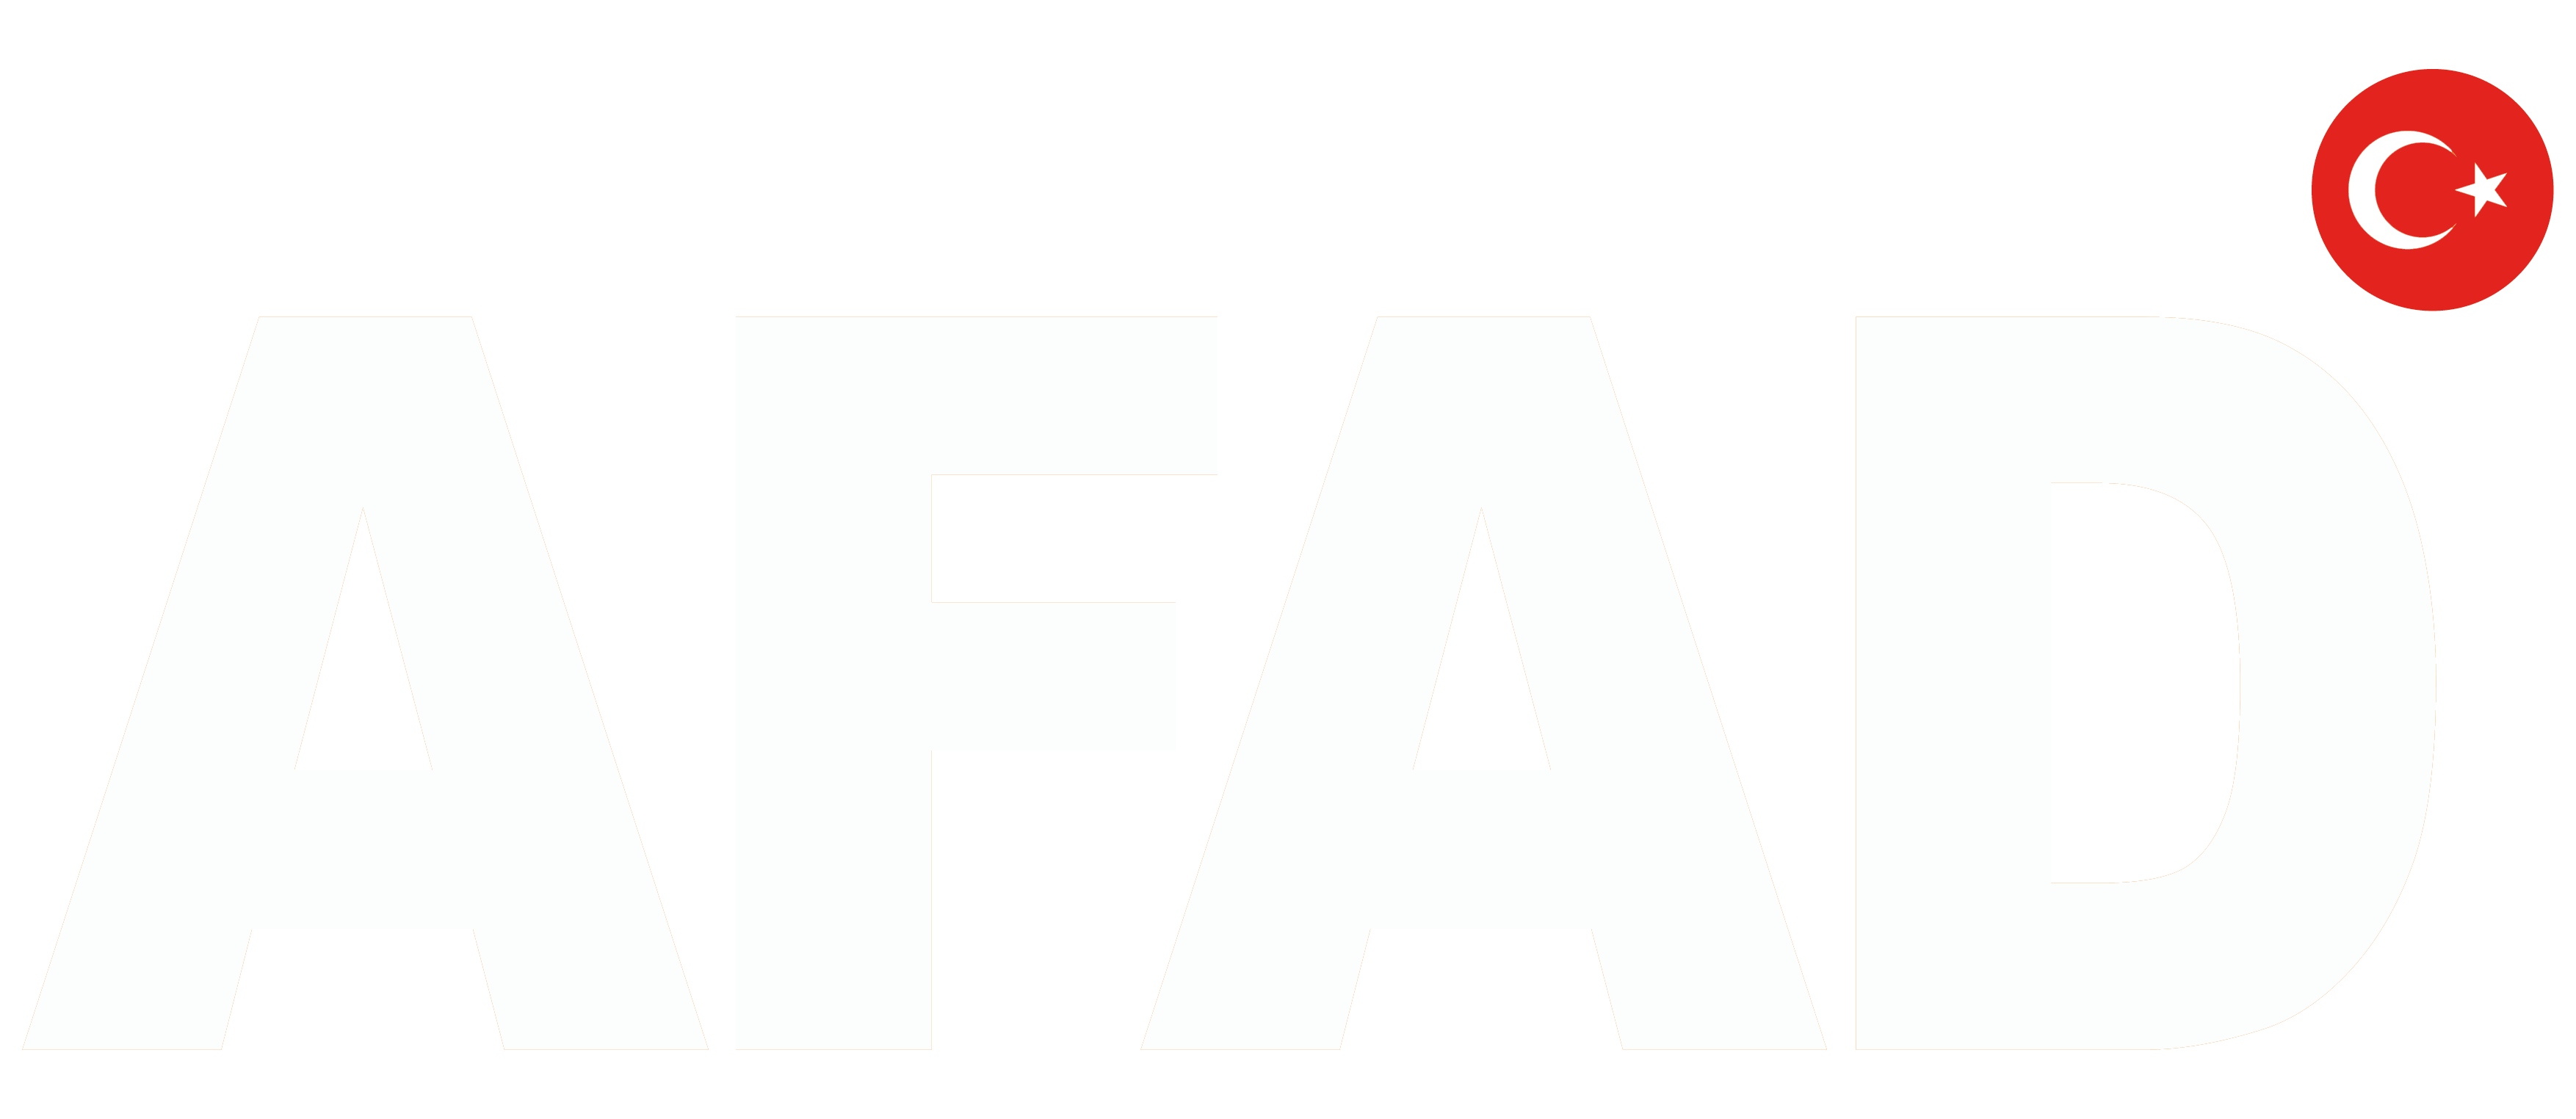 Afad Logo